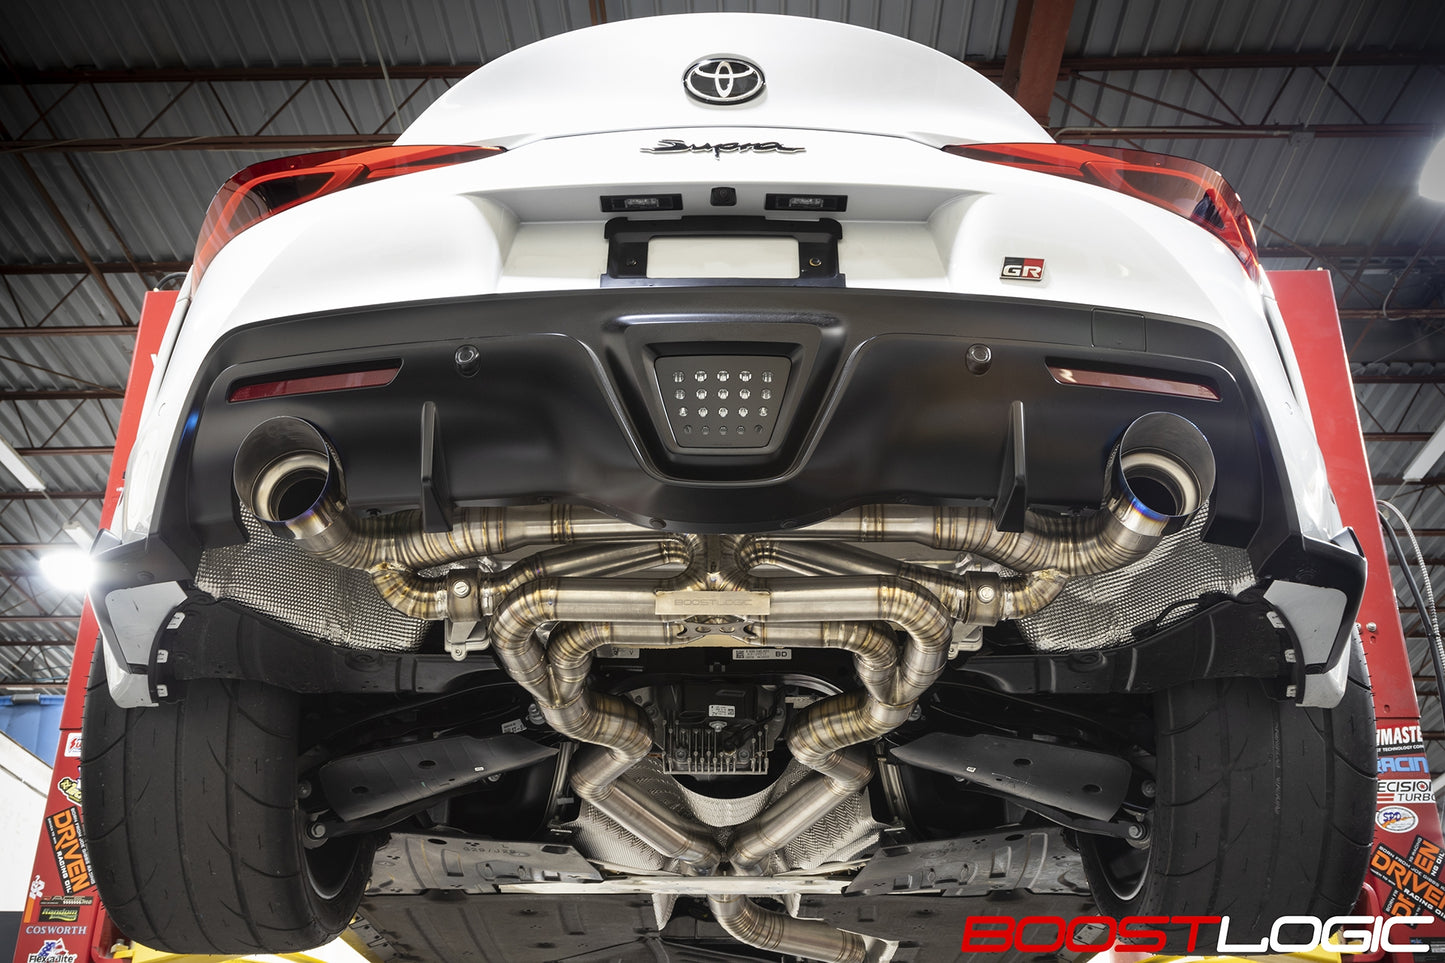 Boost Logic Titanium Exhaust Non-Valved Catback Toyota MKV Supra